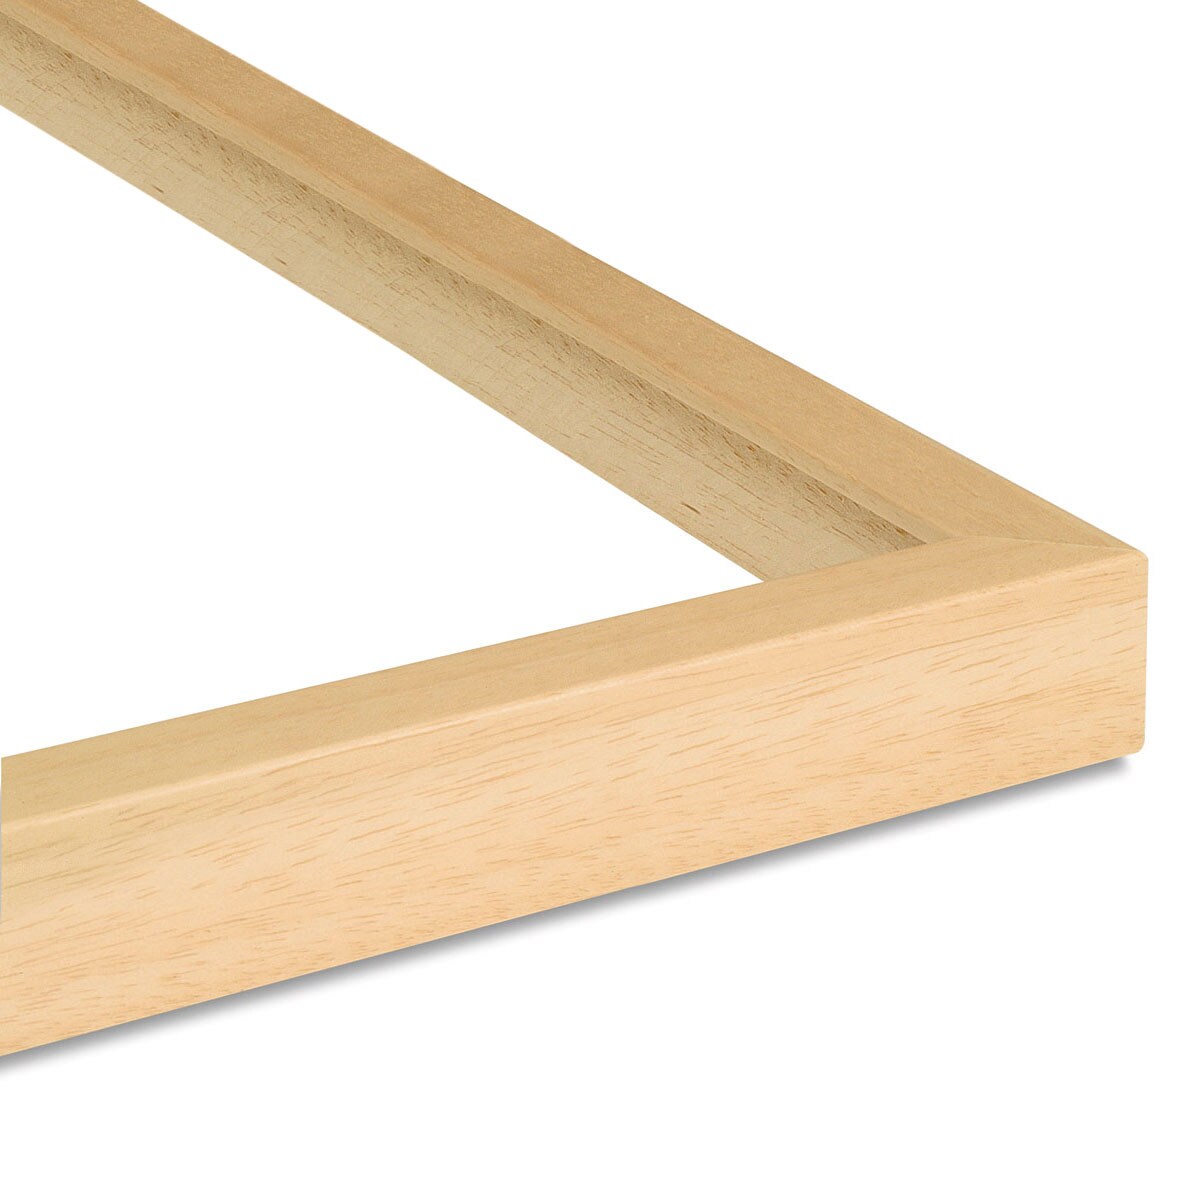 Nielsen Bainbridge Ayous Wood Frame Kit - 8